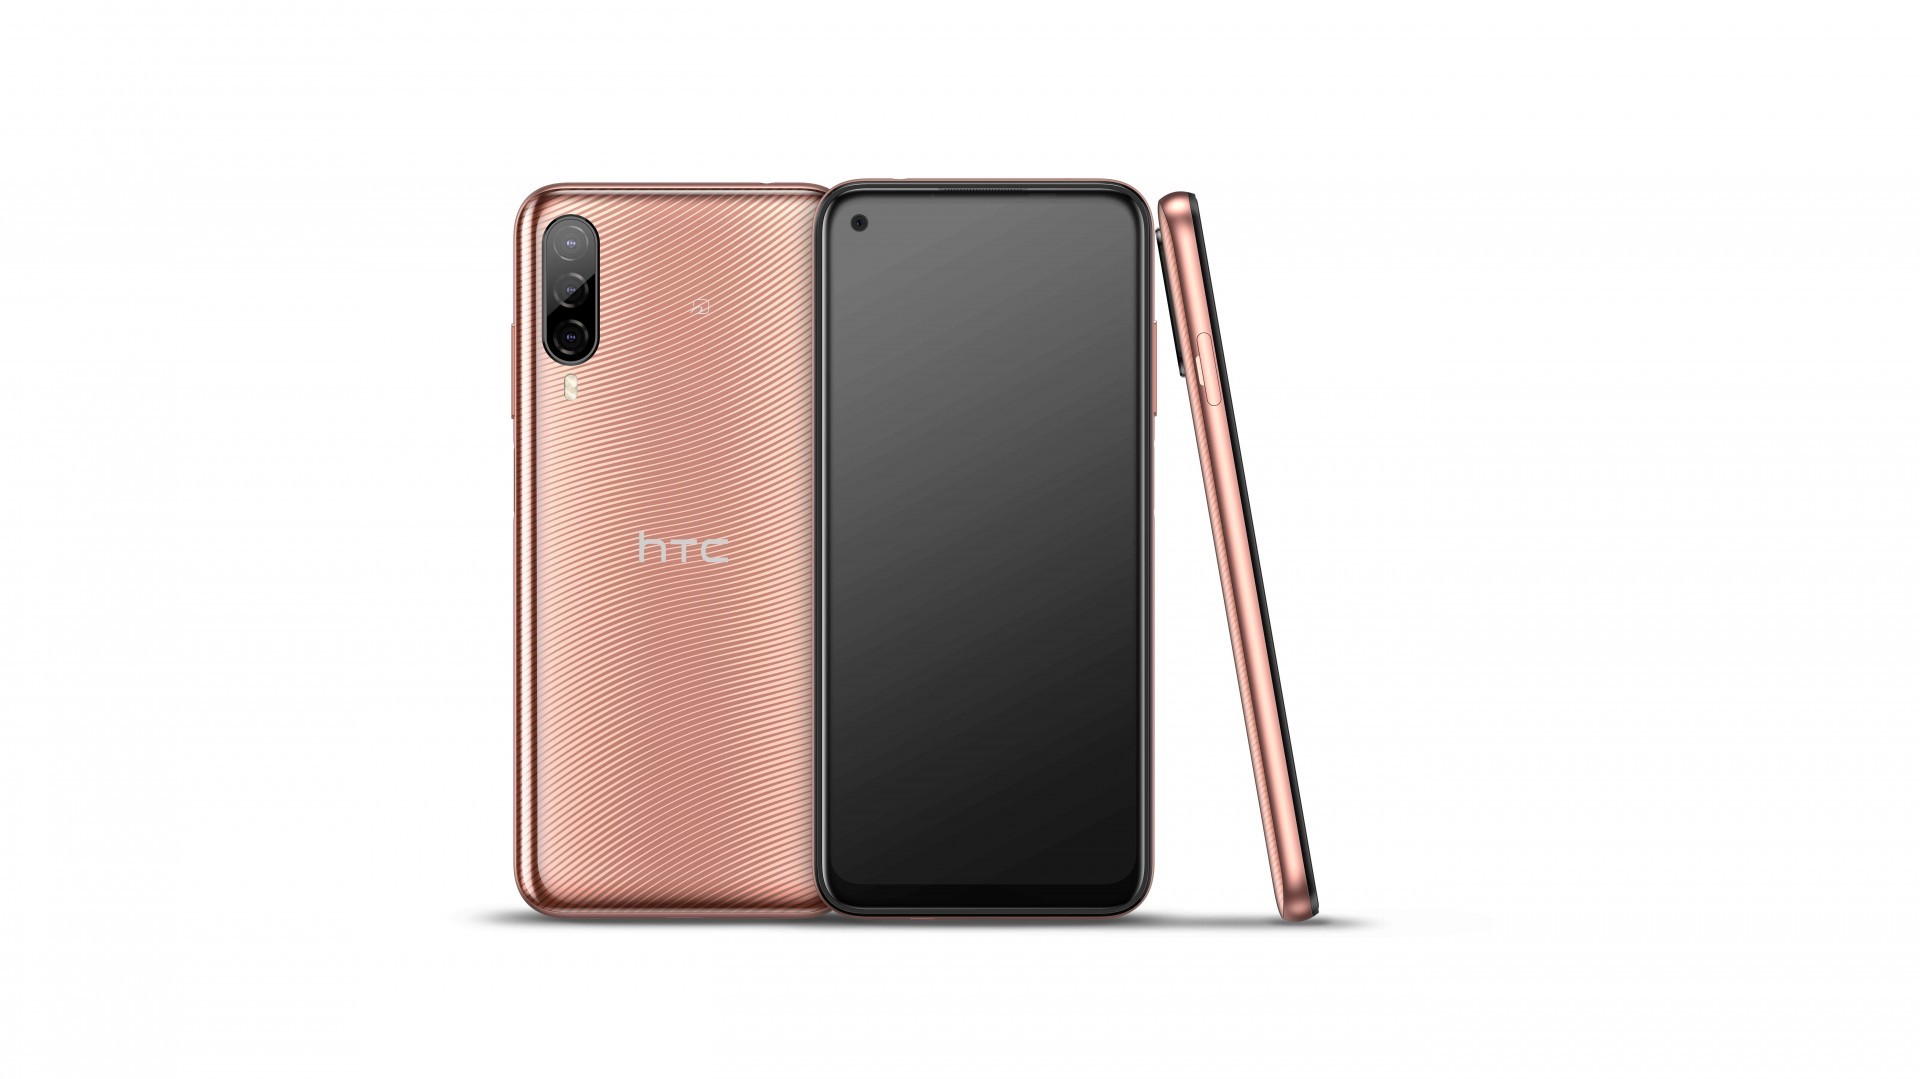 HTC 宣布推出首款應用於元宇宙平台 VIVERSE 的全新智慧型手機 HTC Desire 22 pro